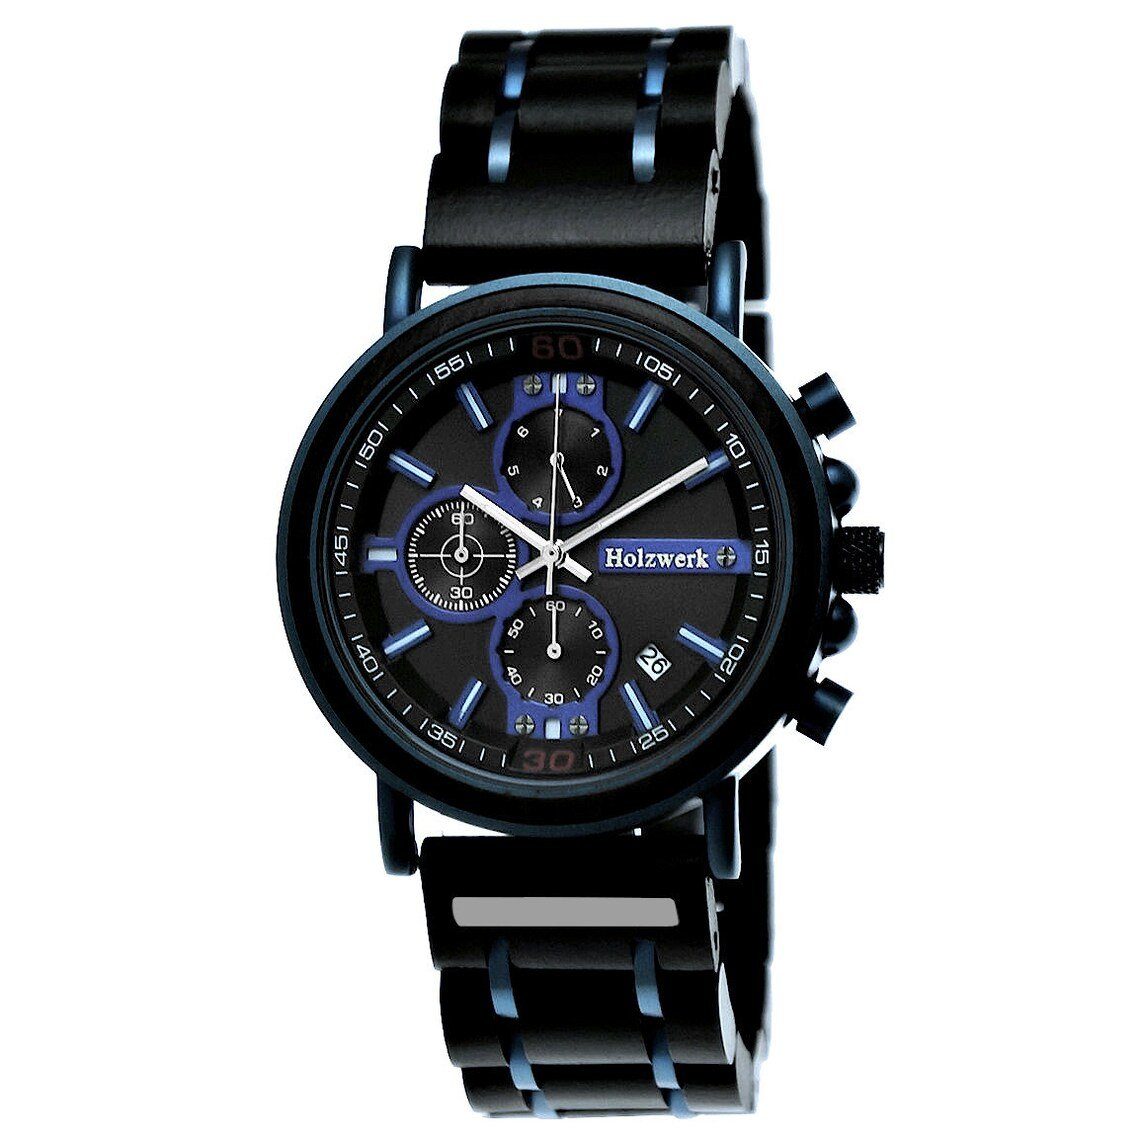 Holzwerk Chronograph BALVE Damen & Herren Holz Armband Uhr mit Datum in schwarz, blau